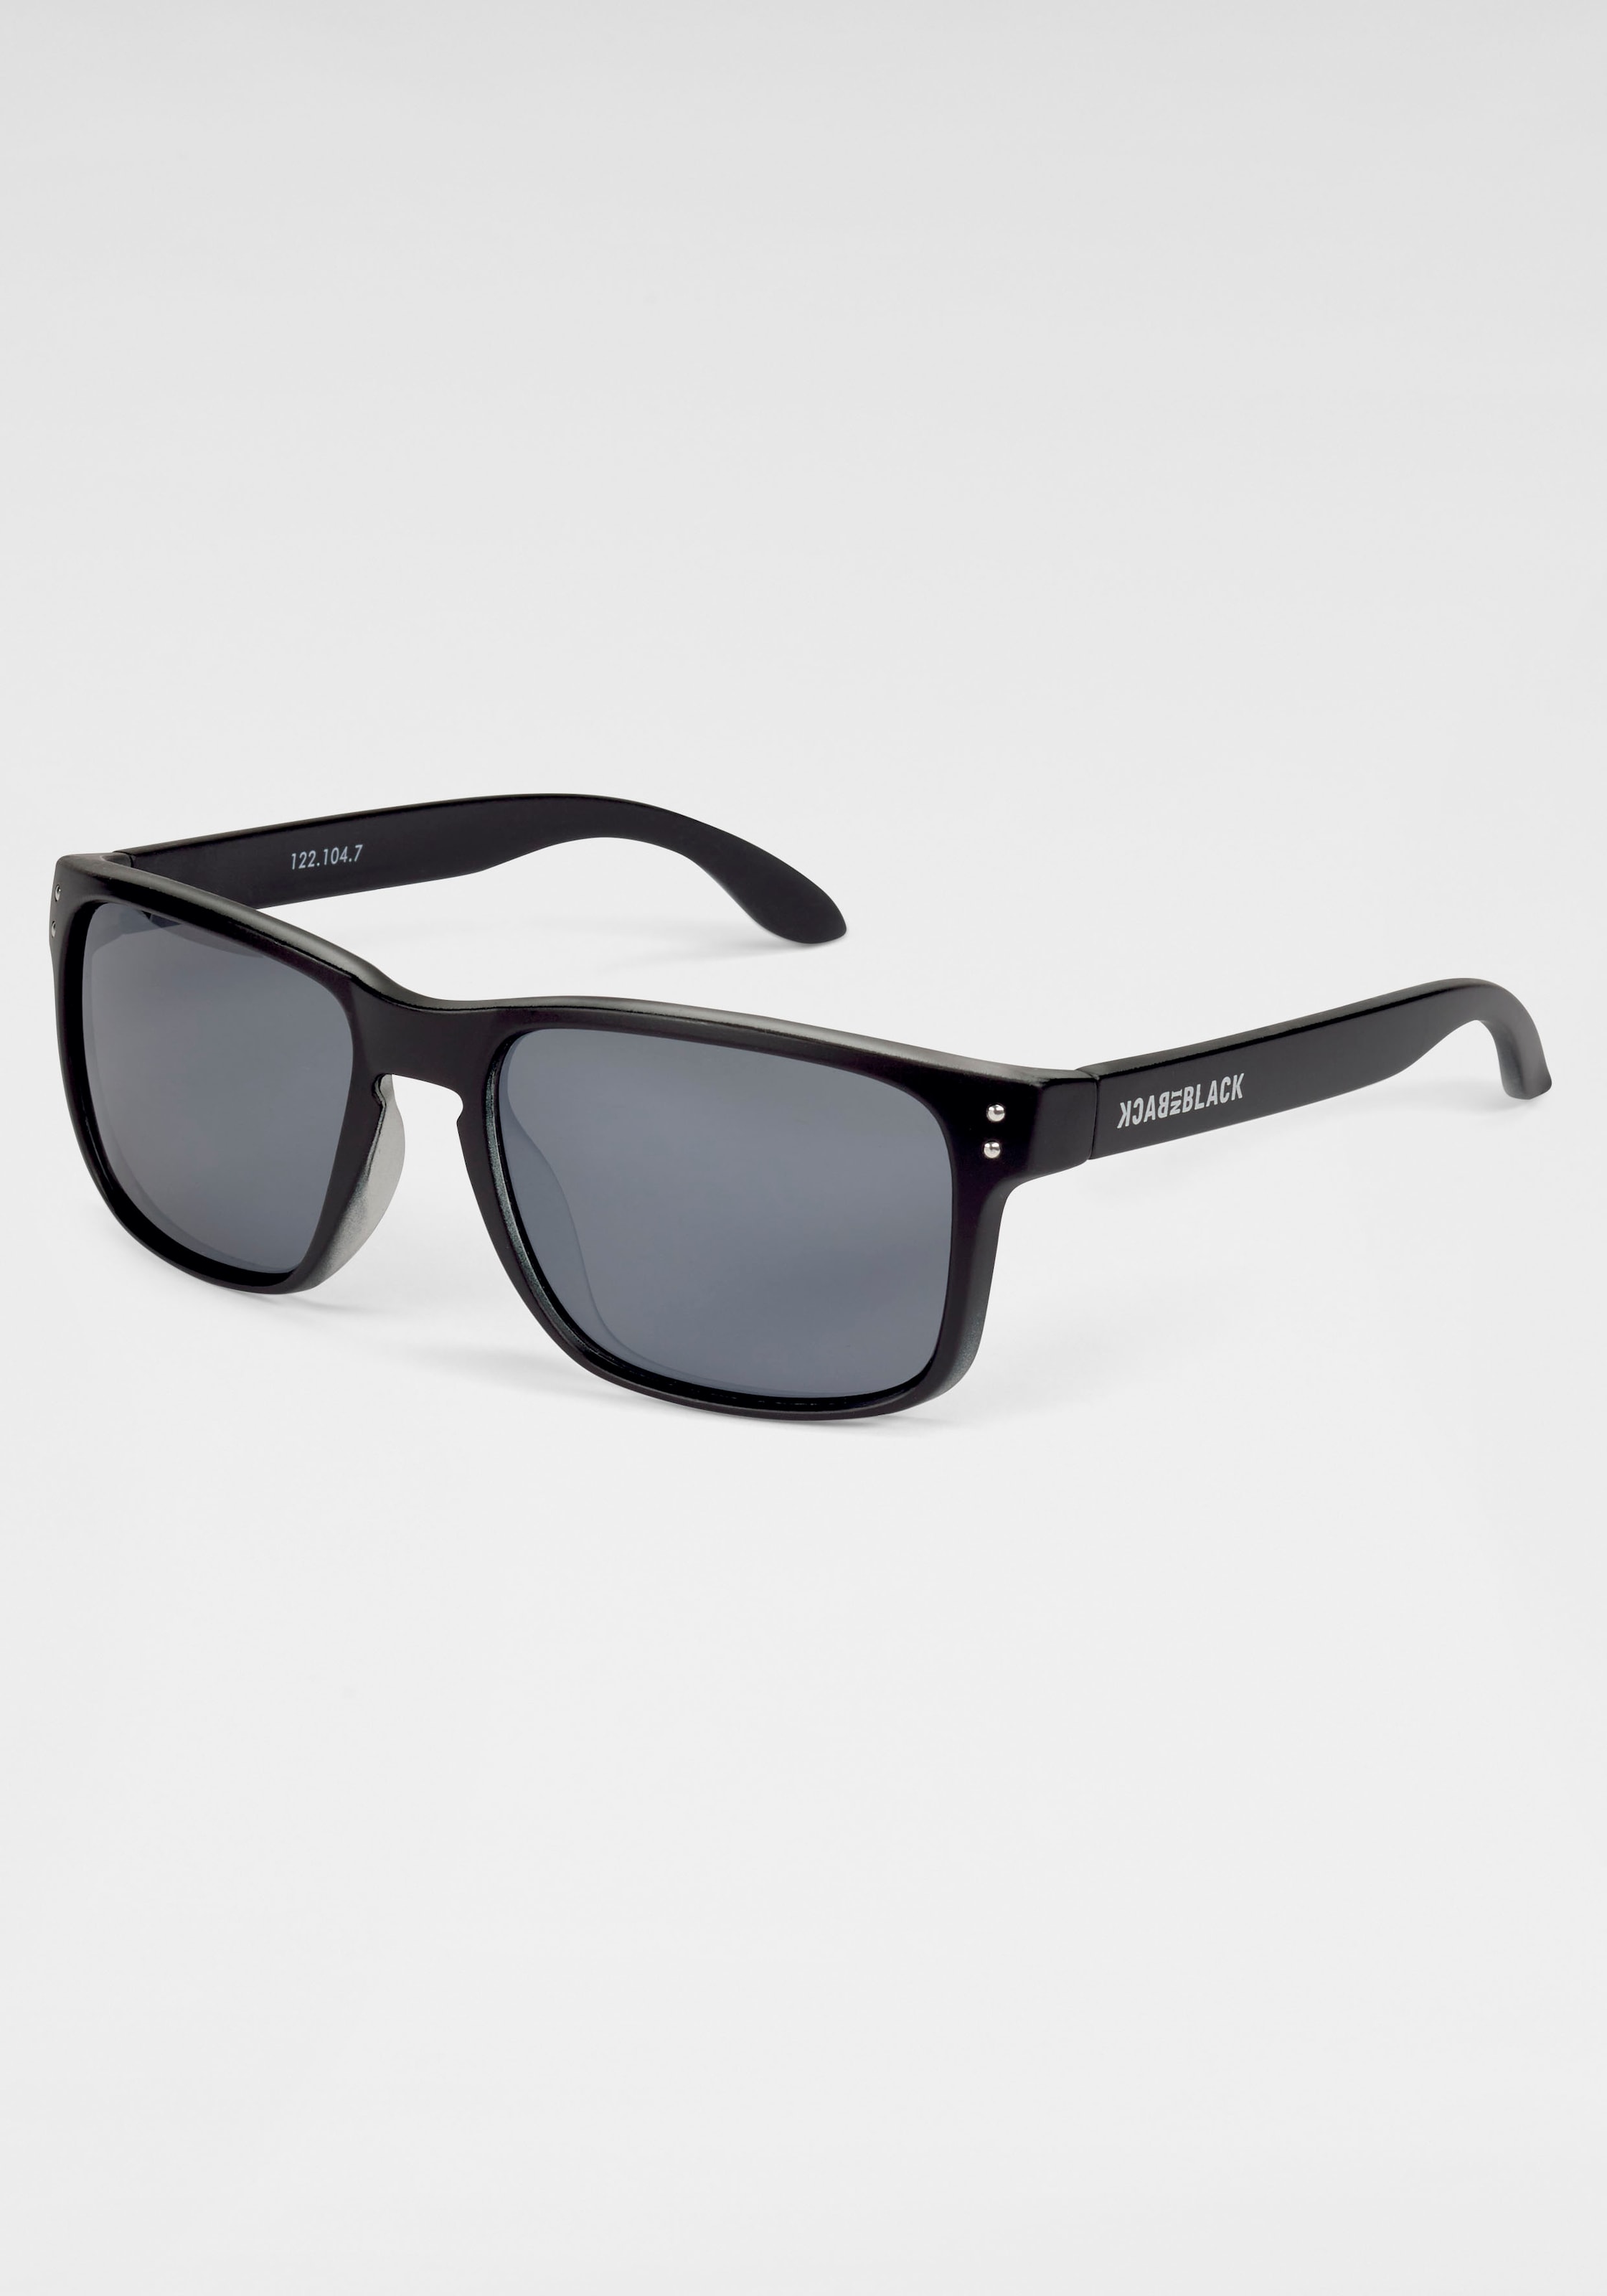 Sonnenbrille, Vollrand Sonnenbrille Kunststoff schwarz mit dunklen Gläsern